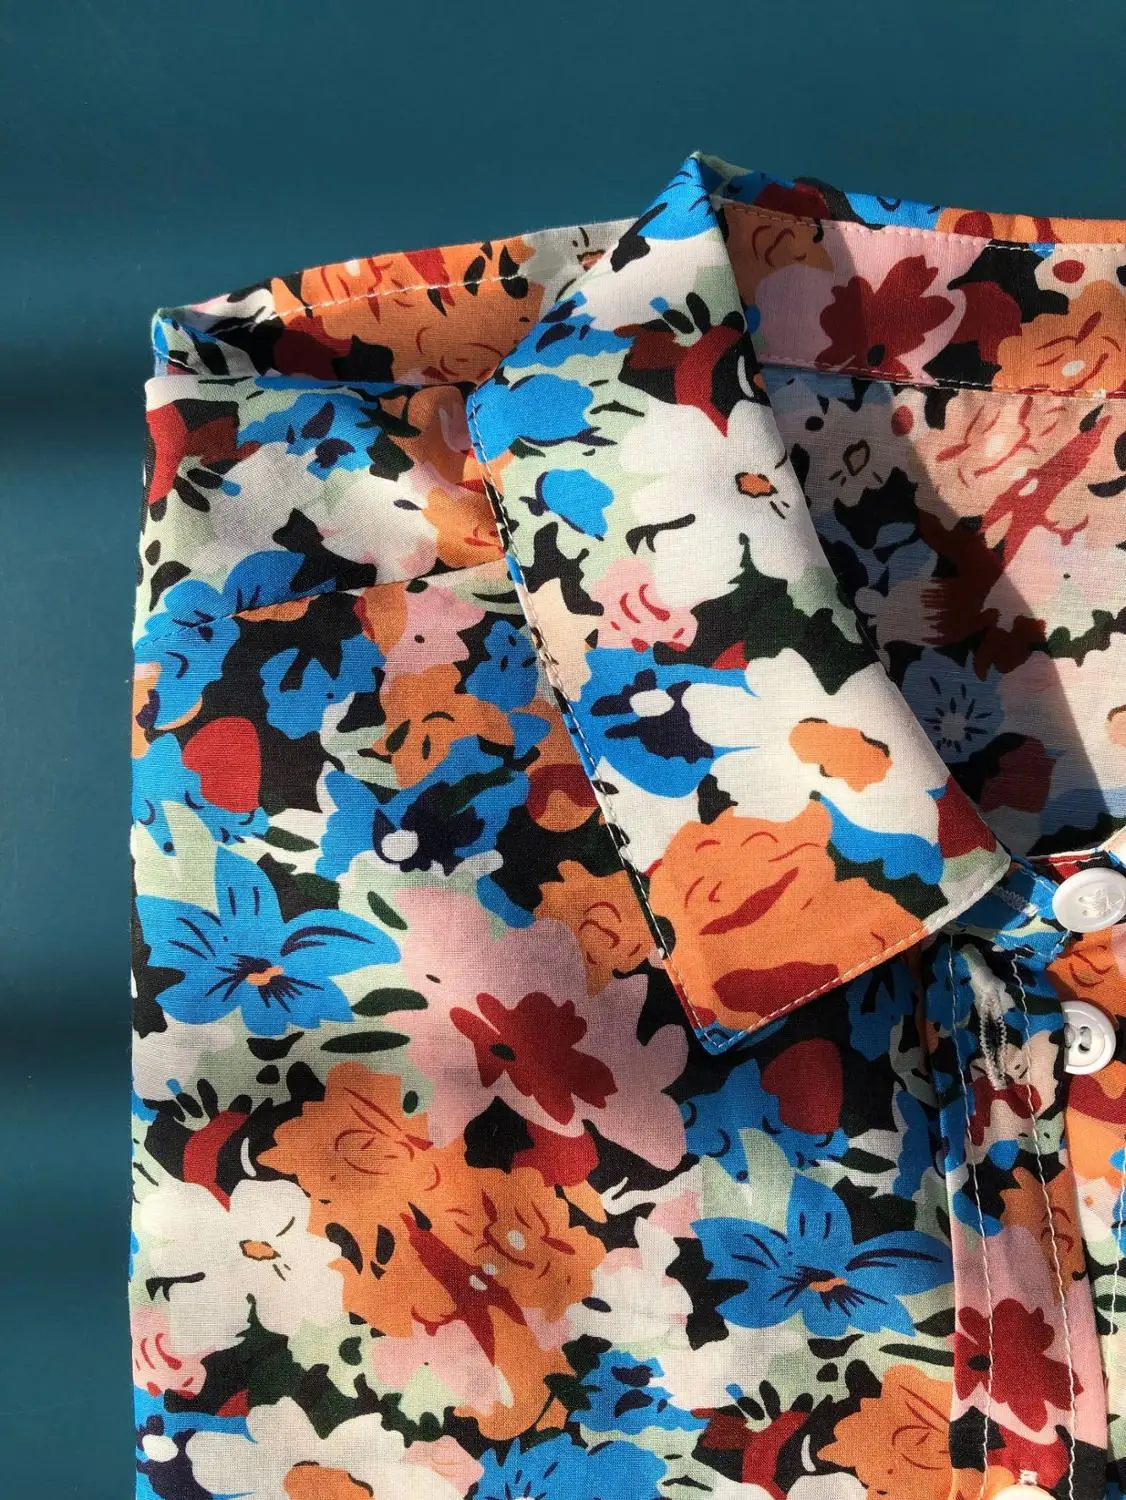 Las mujeres de la Impresión Floral de Manga Larga de la Camisa de Seda de Algodón Romántico francés Gire hacia abajo de Collar Casual Blusa de 2020 Principios de la Primavera 0